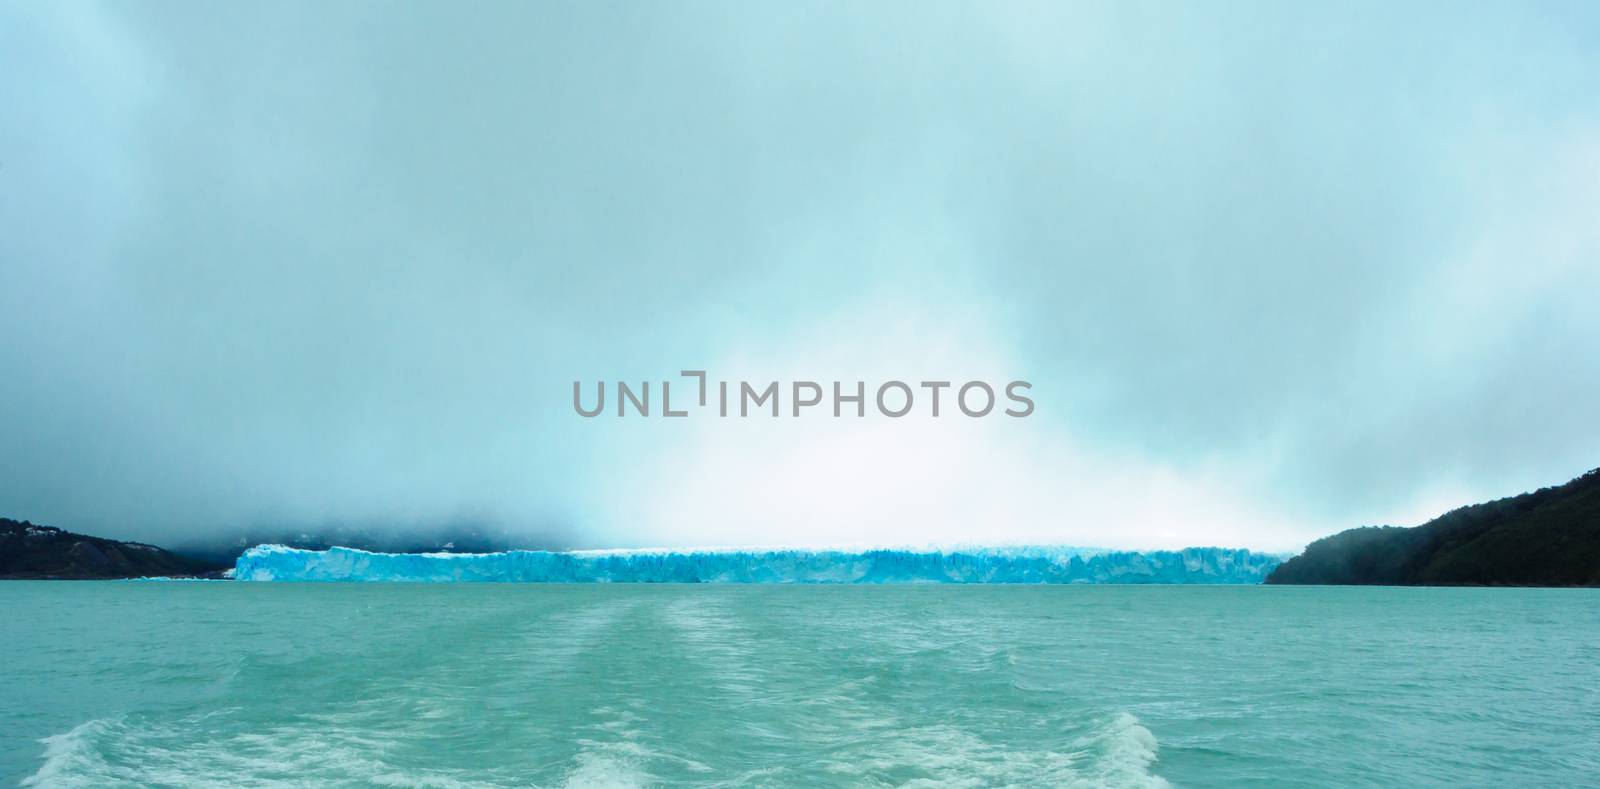 Perito Moreno Glacier, Lago Argentino, the Patagonian province of Santa Cruz, Argentina